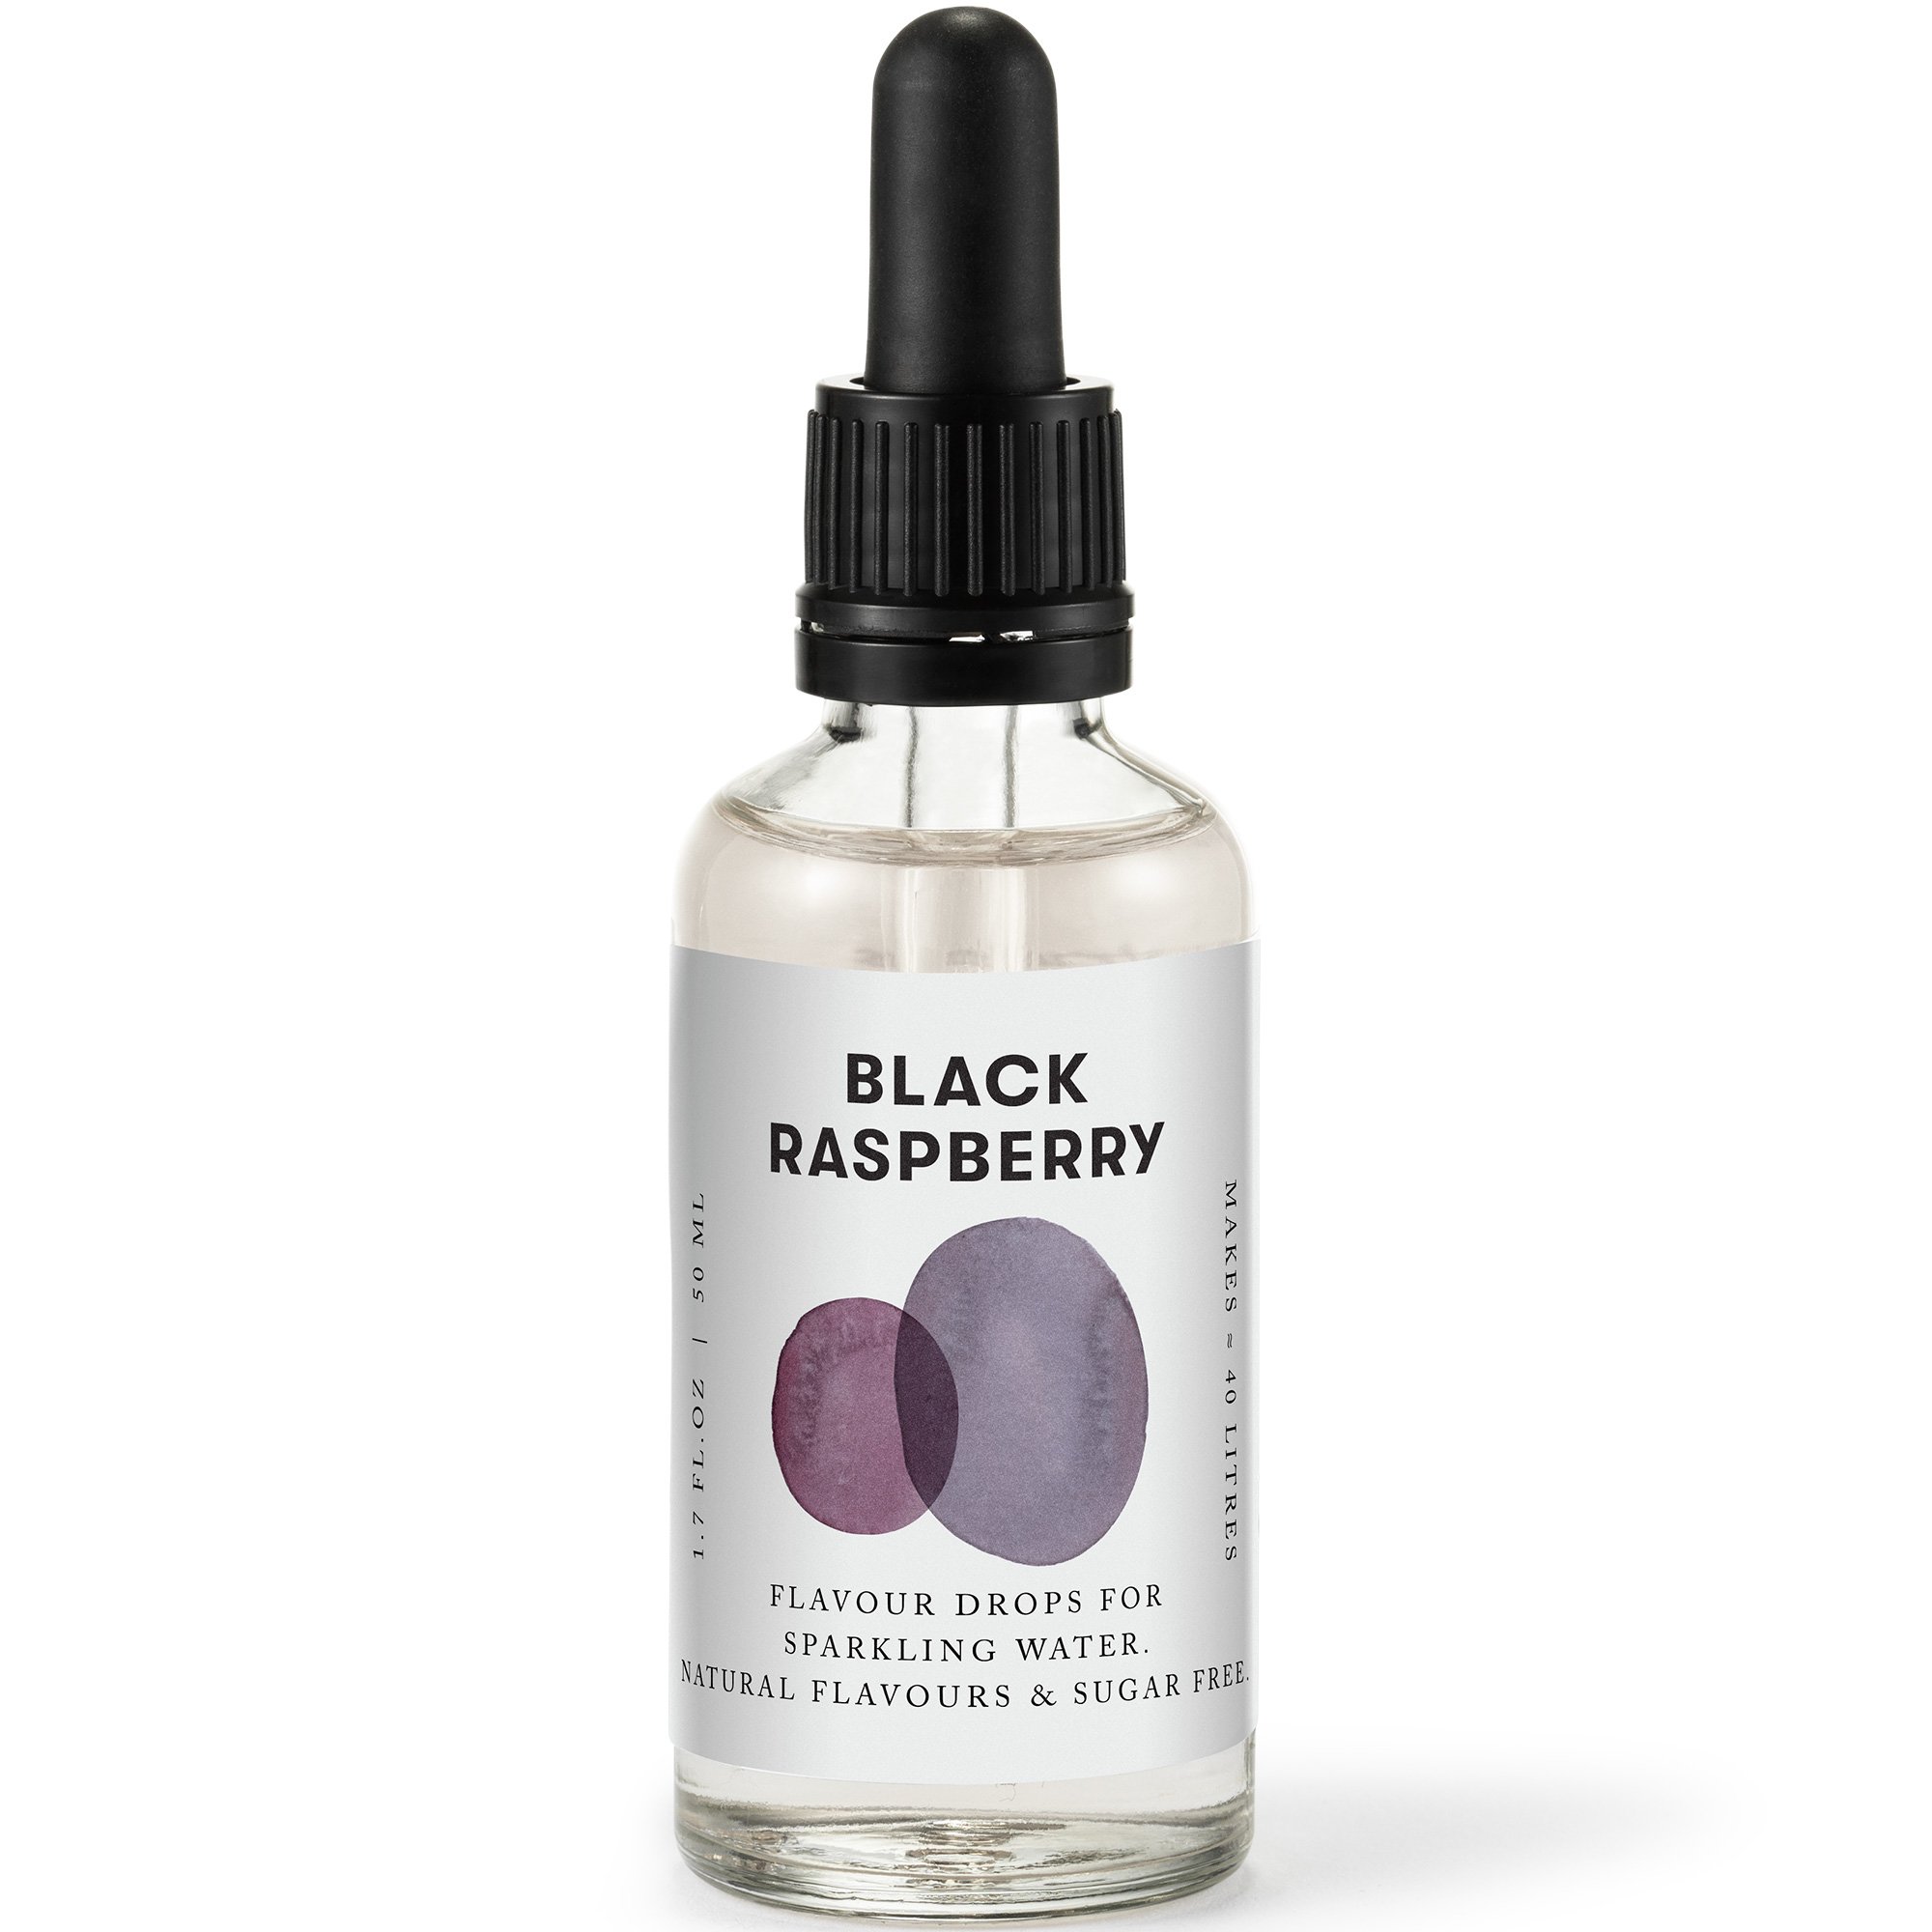 Aarke Flavour drops black raspberry